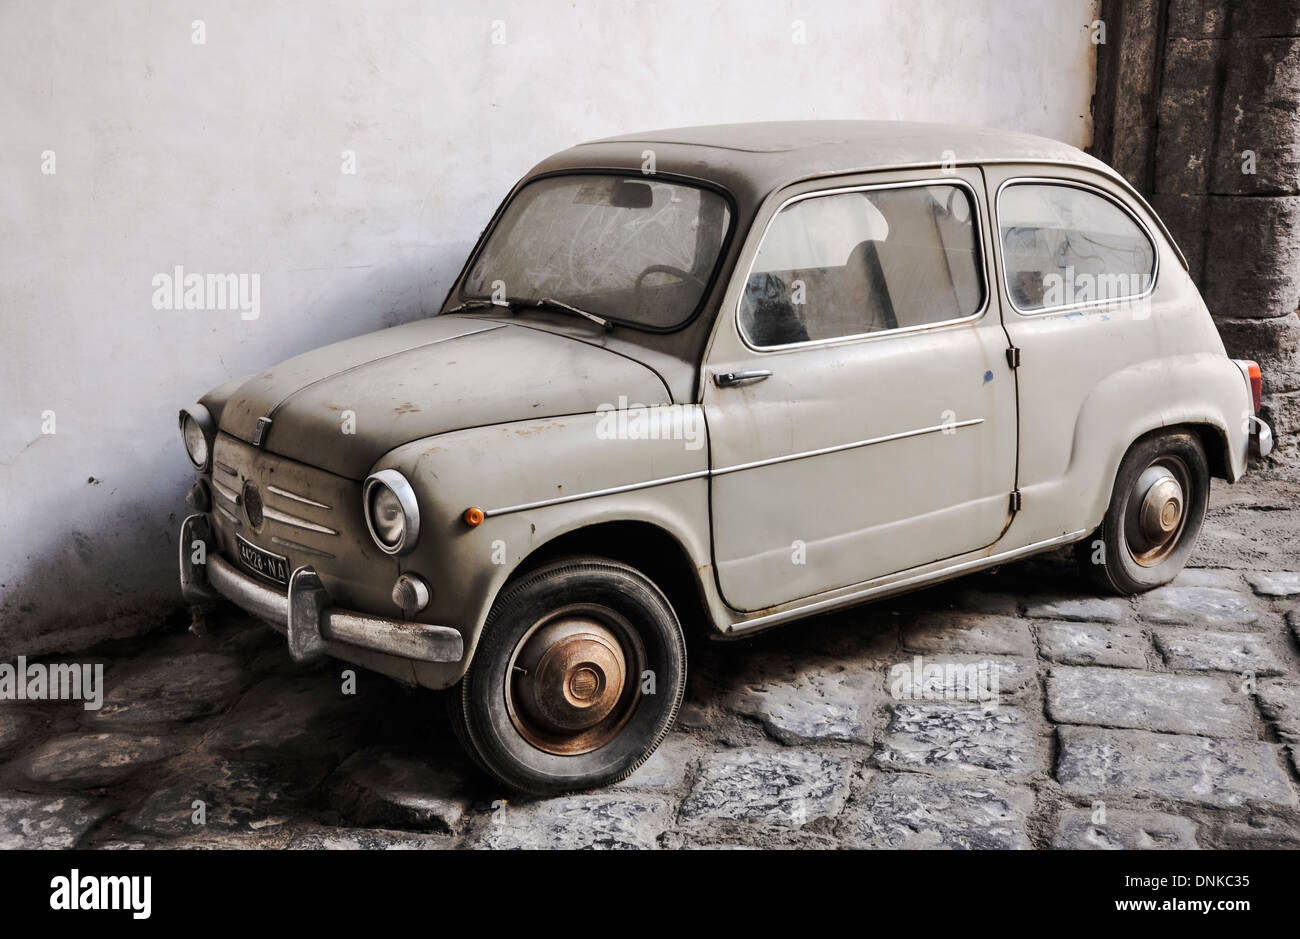 old white italian car, Fiat Seicento Stock Photo - Alamy